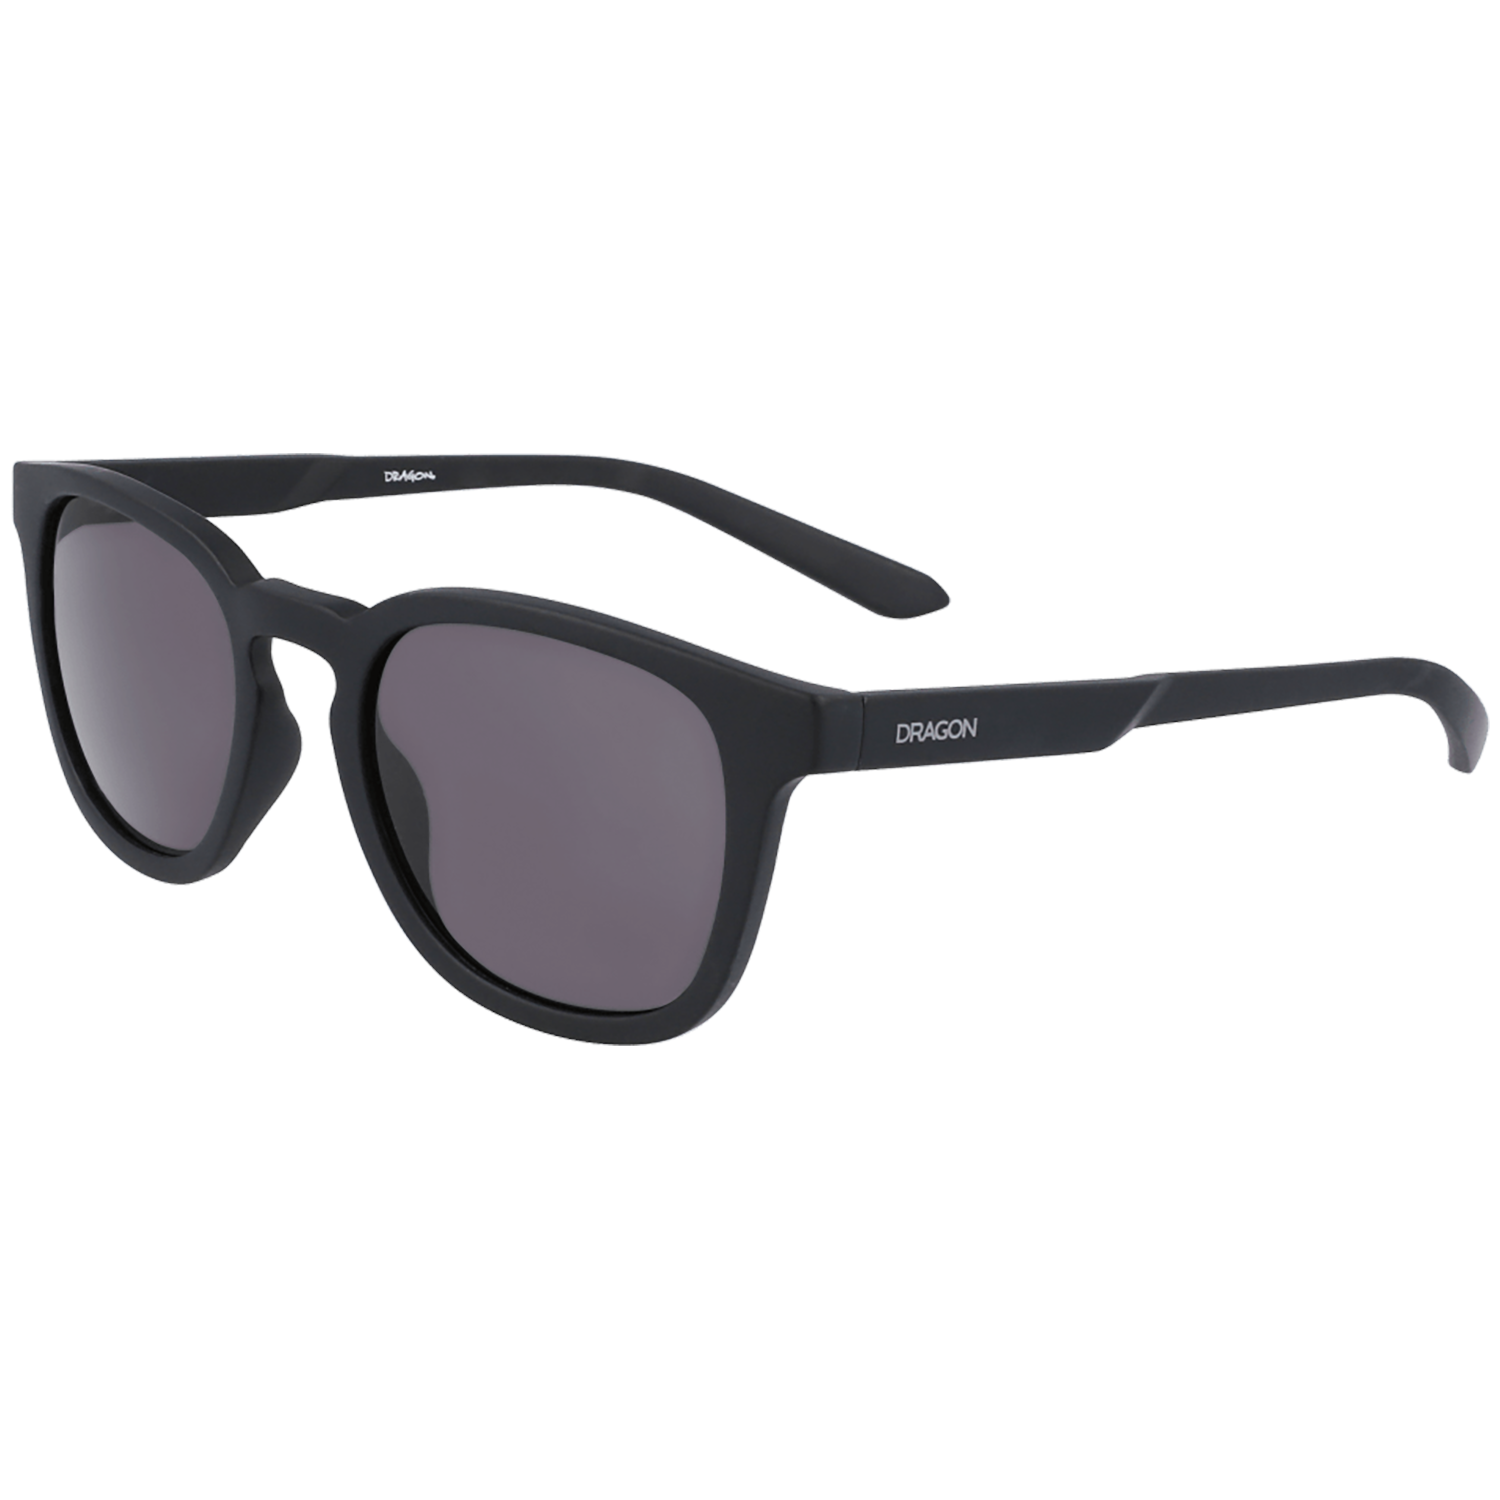 Солнцезащитные очки Dragon Finch, черный/серый